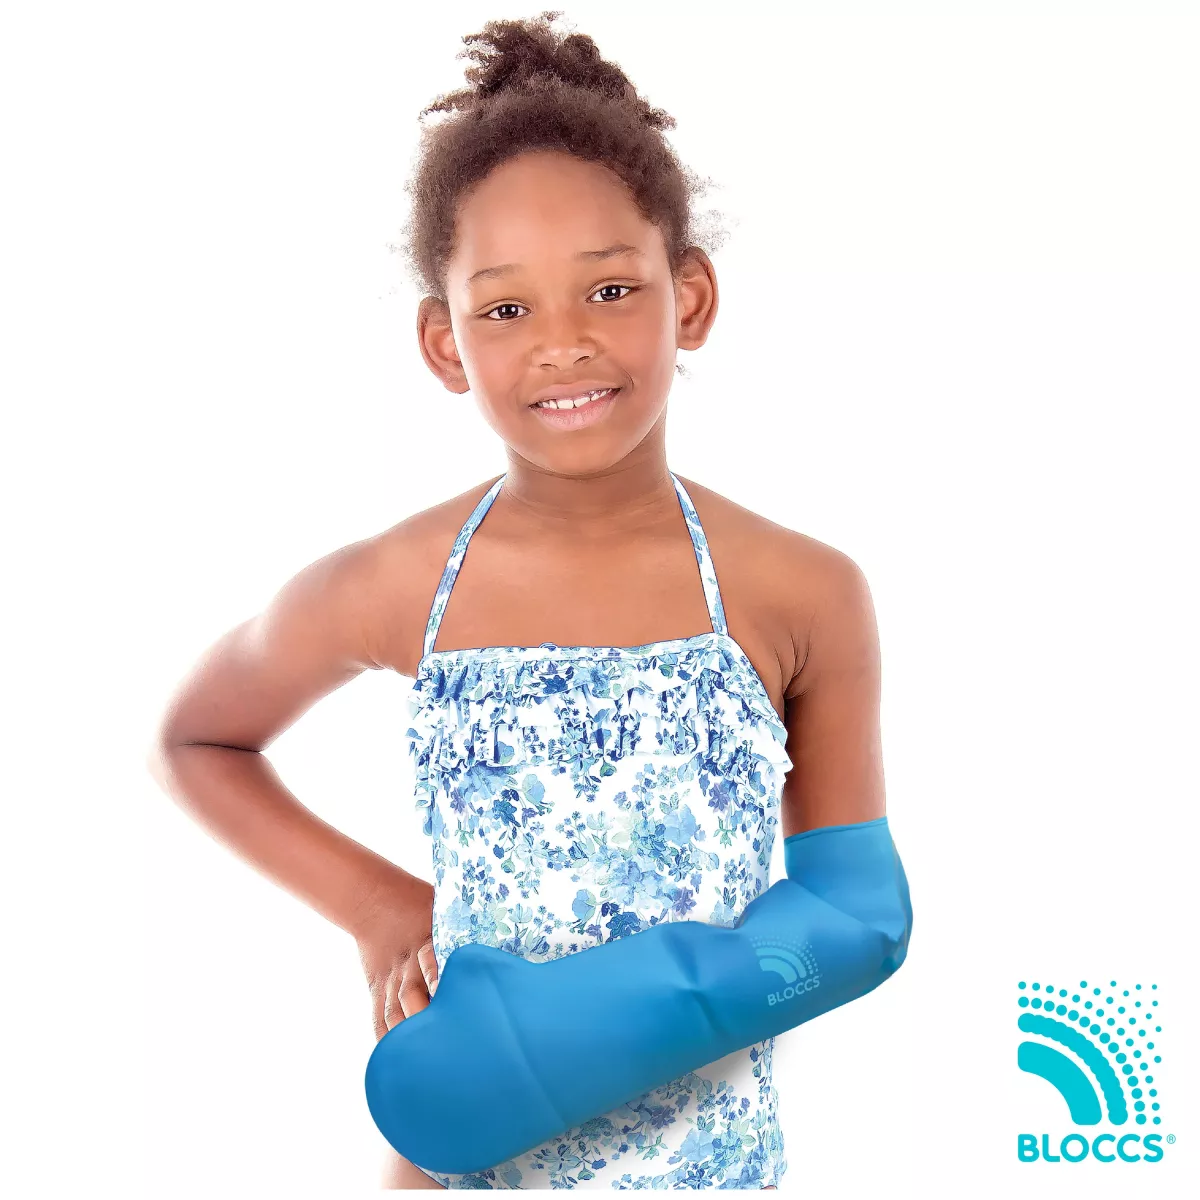 Protecție Bloccs pentru bandaj si ghips  pentru mana copil, marime M, circumferinta mainii 18-22cm, lungime protectie 52cm